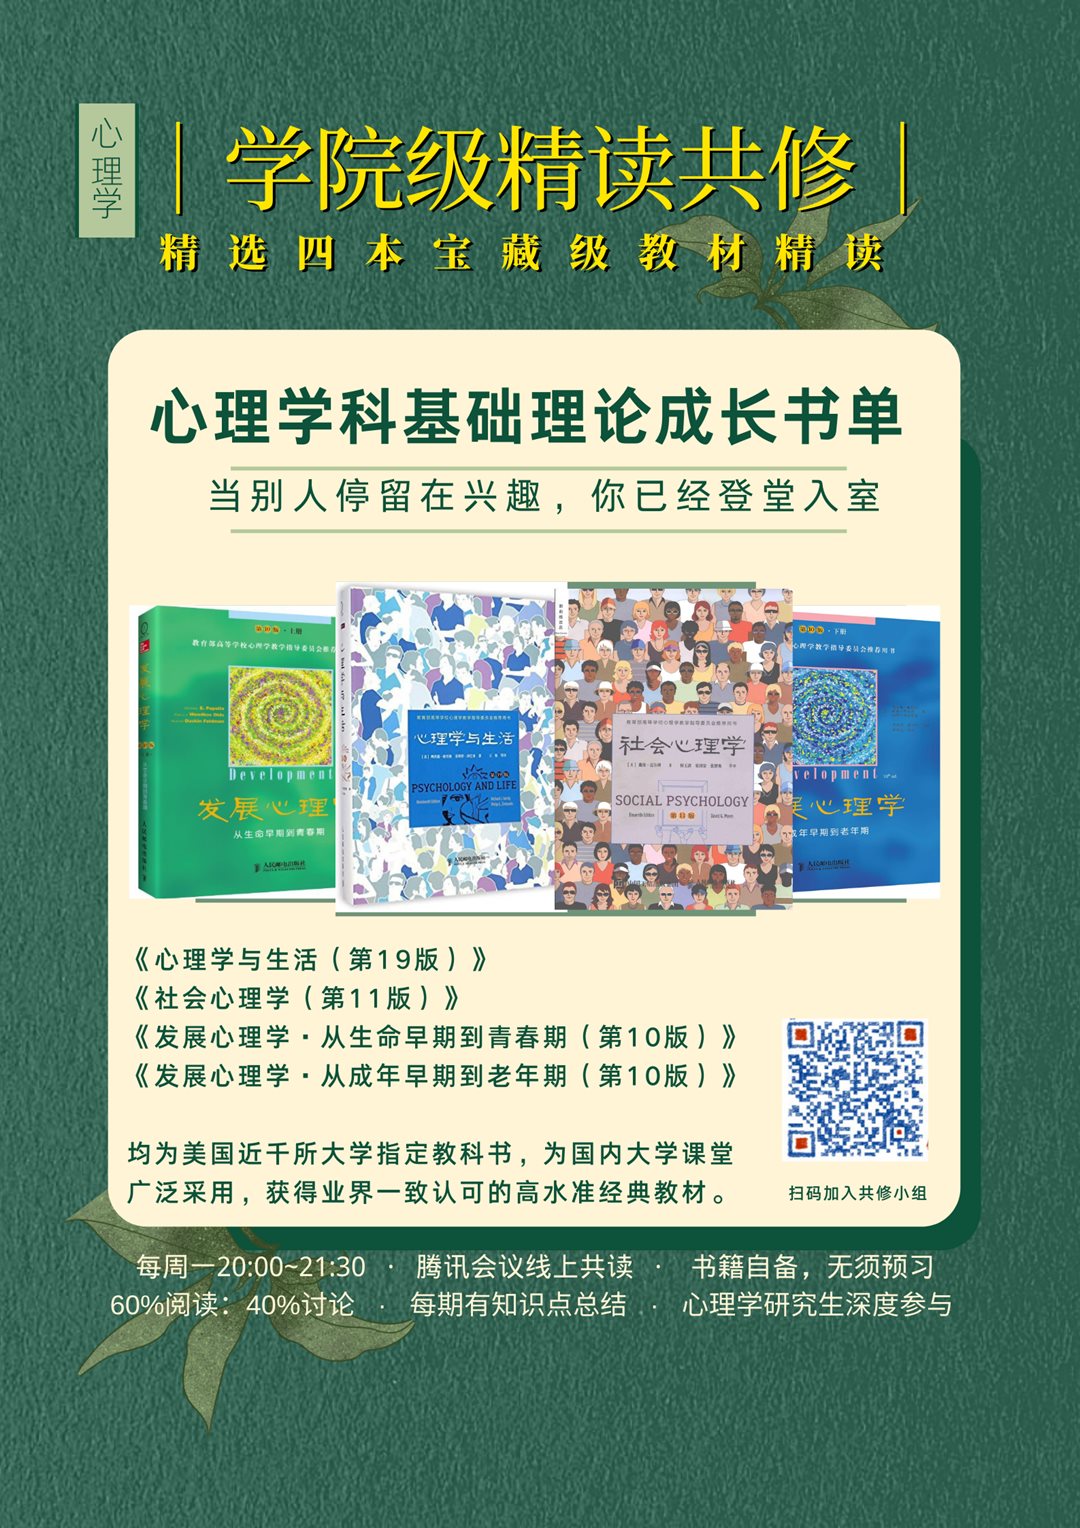 金绿色精选书单个人成长阅读计划精致世界读书日节日分享中文海报-2.png